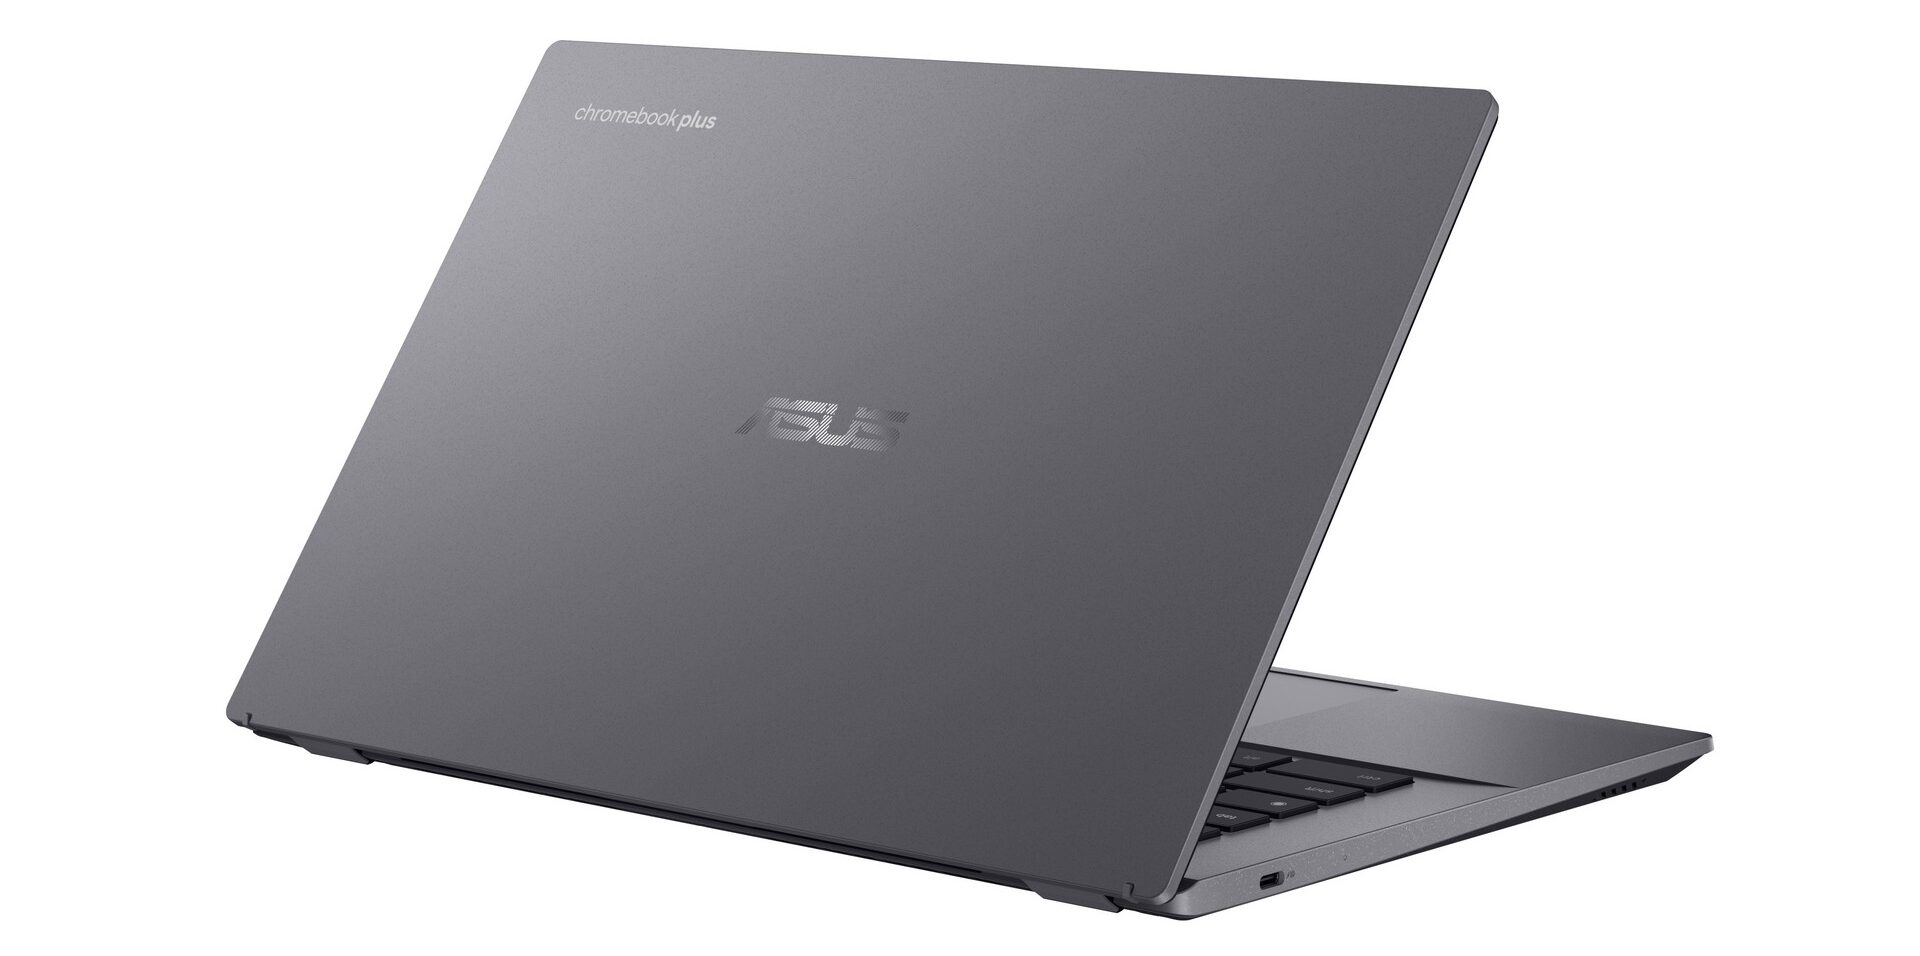 ASUS Chromebook Plus CX34_CX3402